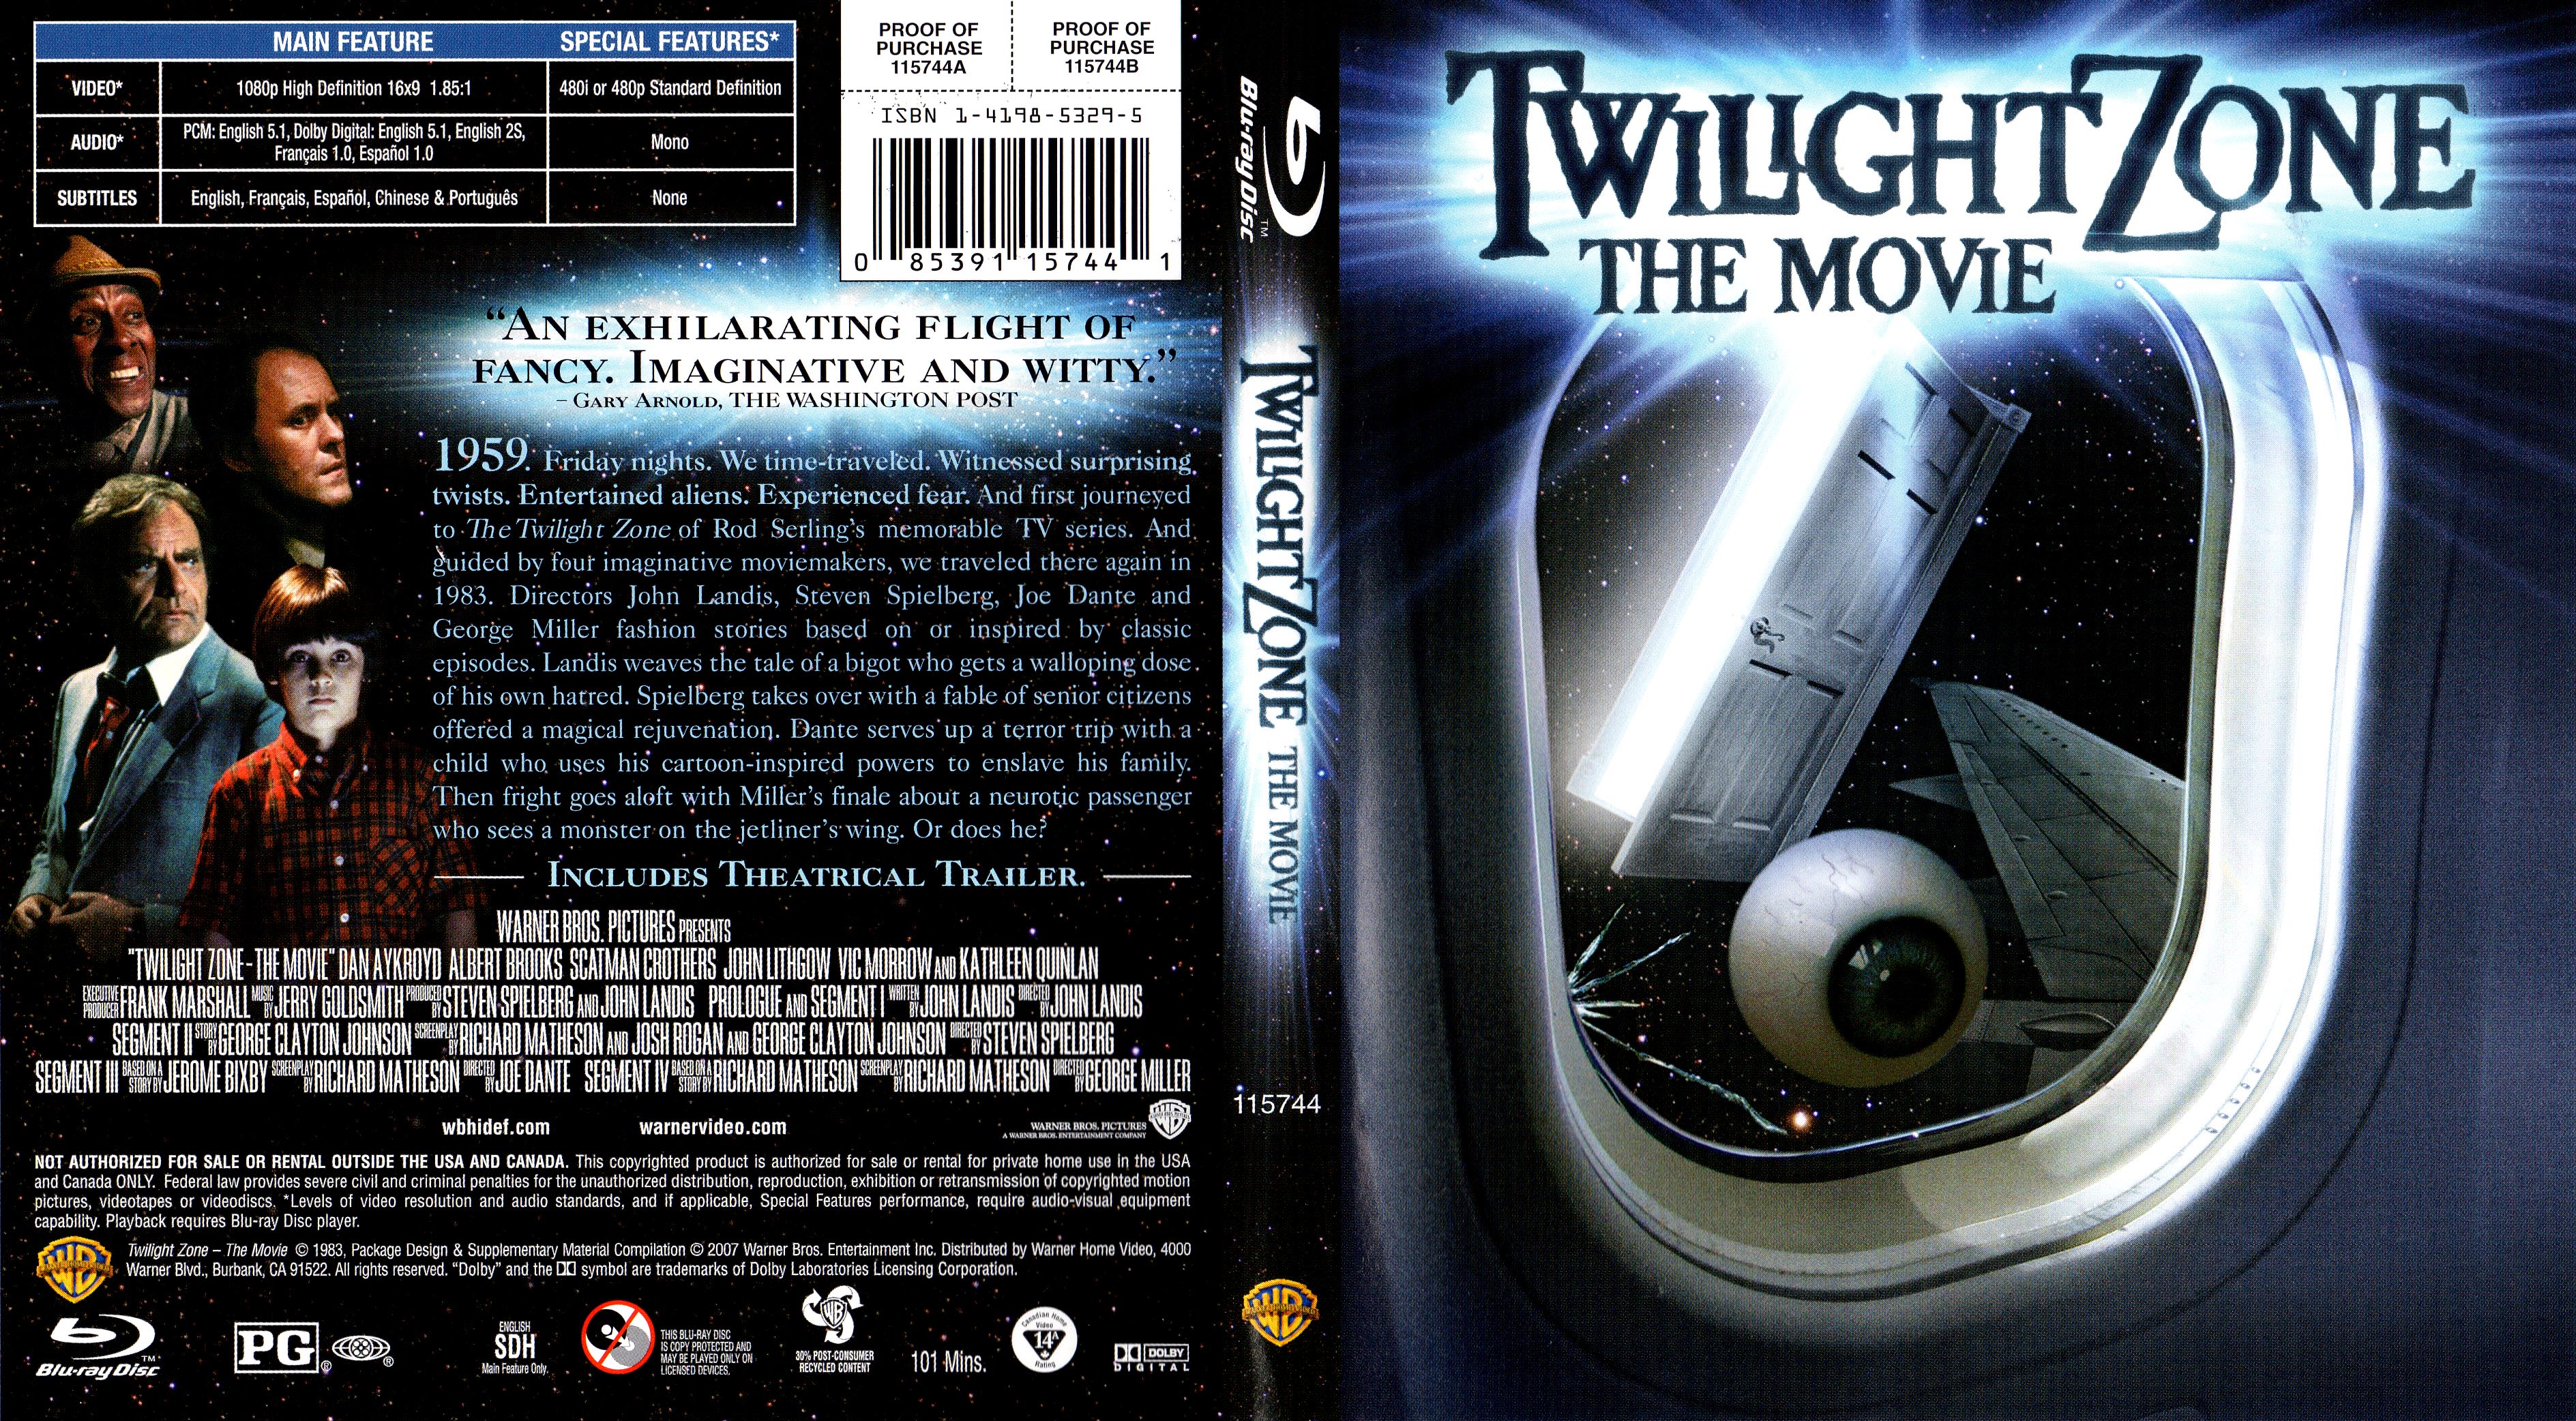 Jaquette DVD Twilight zone The movie La Quatrime Dimension Zone 1 (BLU-RAY)